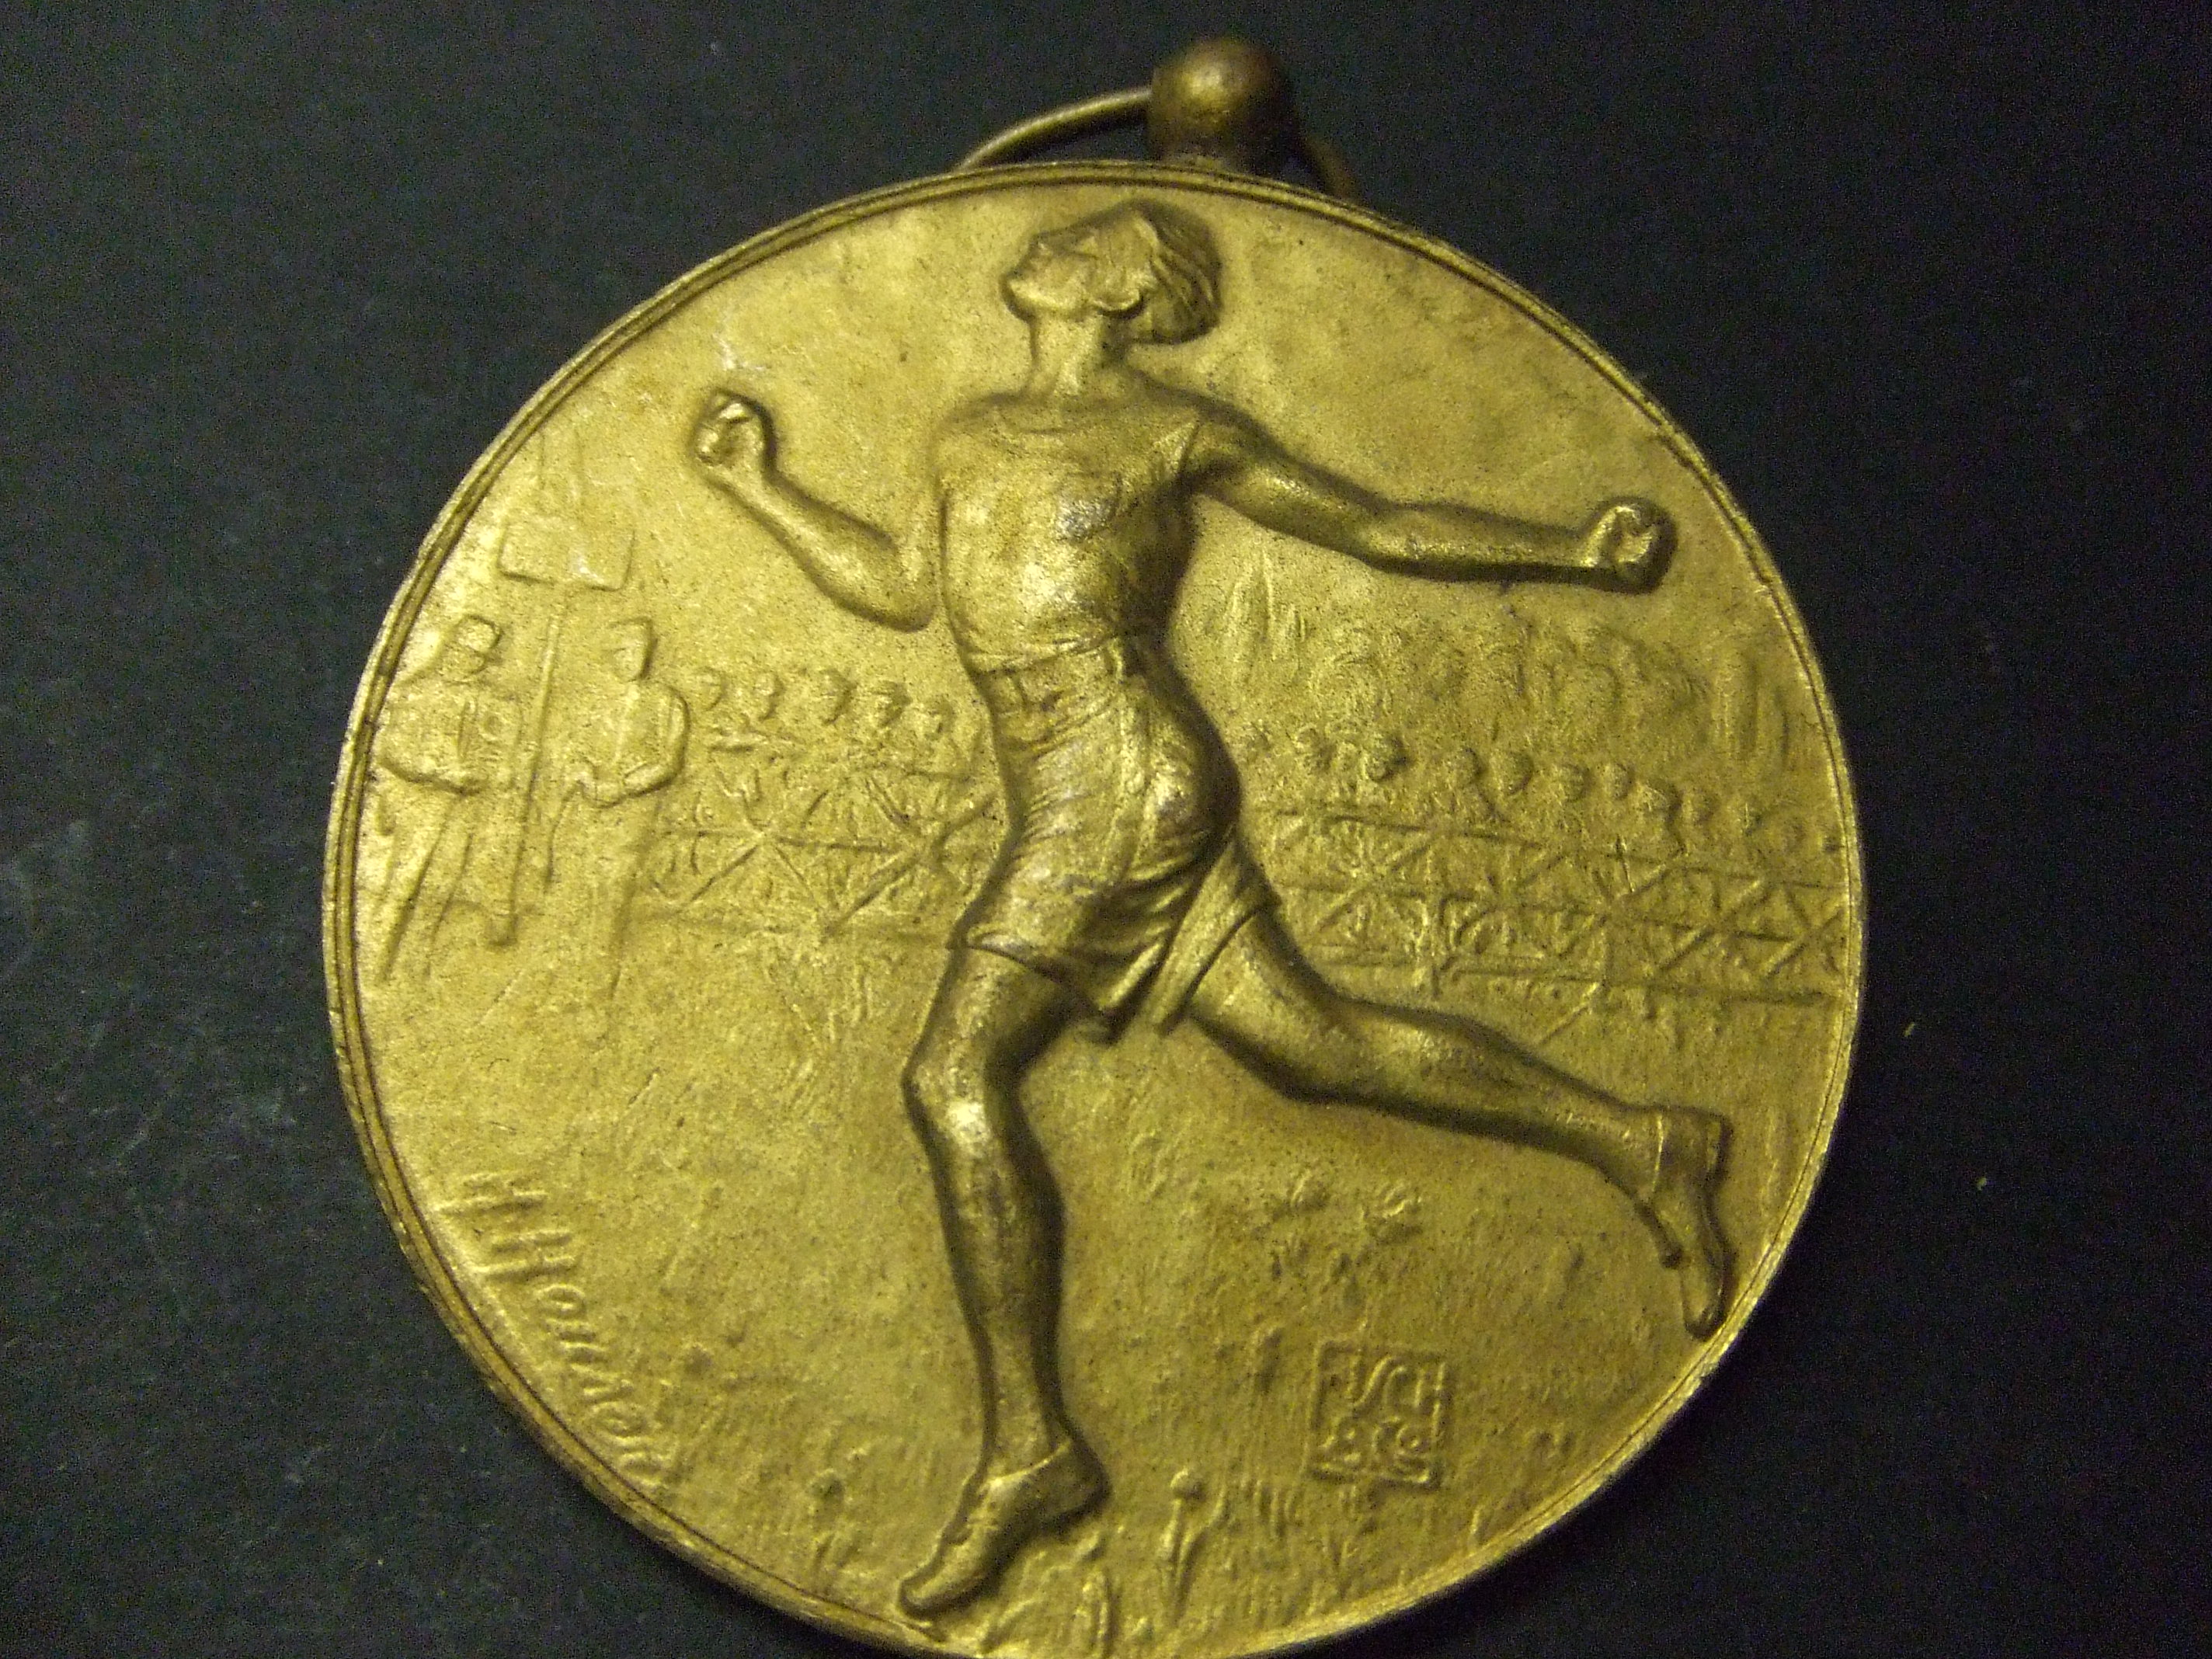 Hardlopen 1e prijs M.S.V. 1930